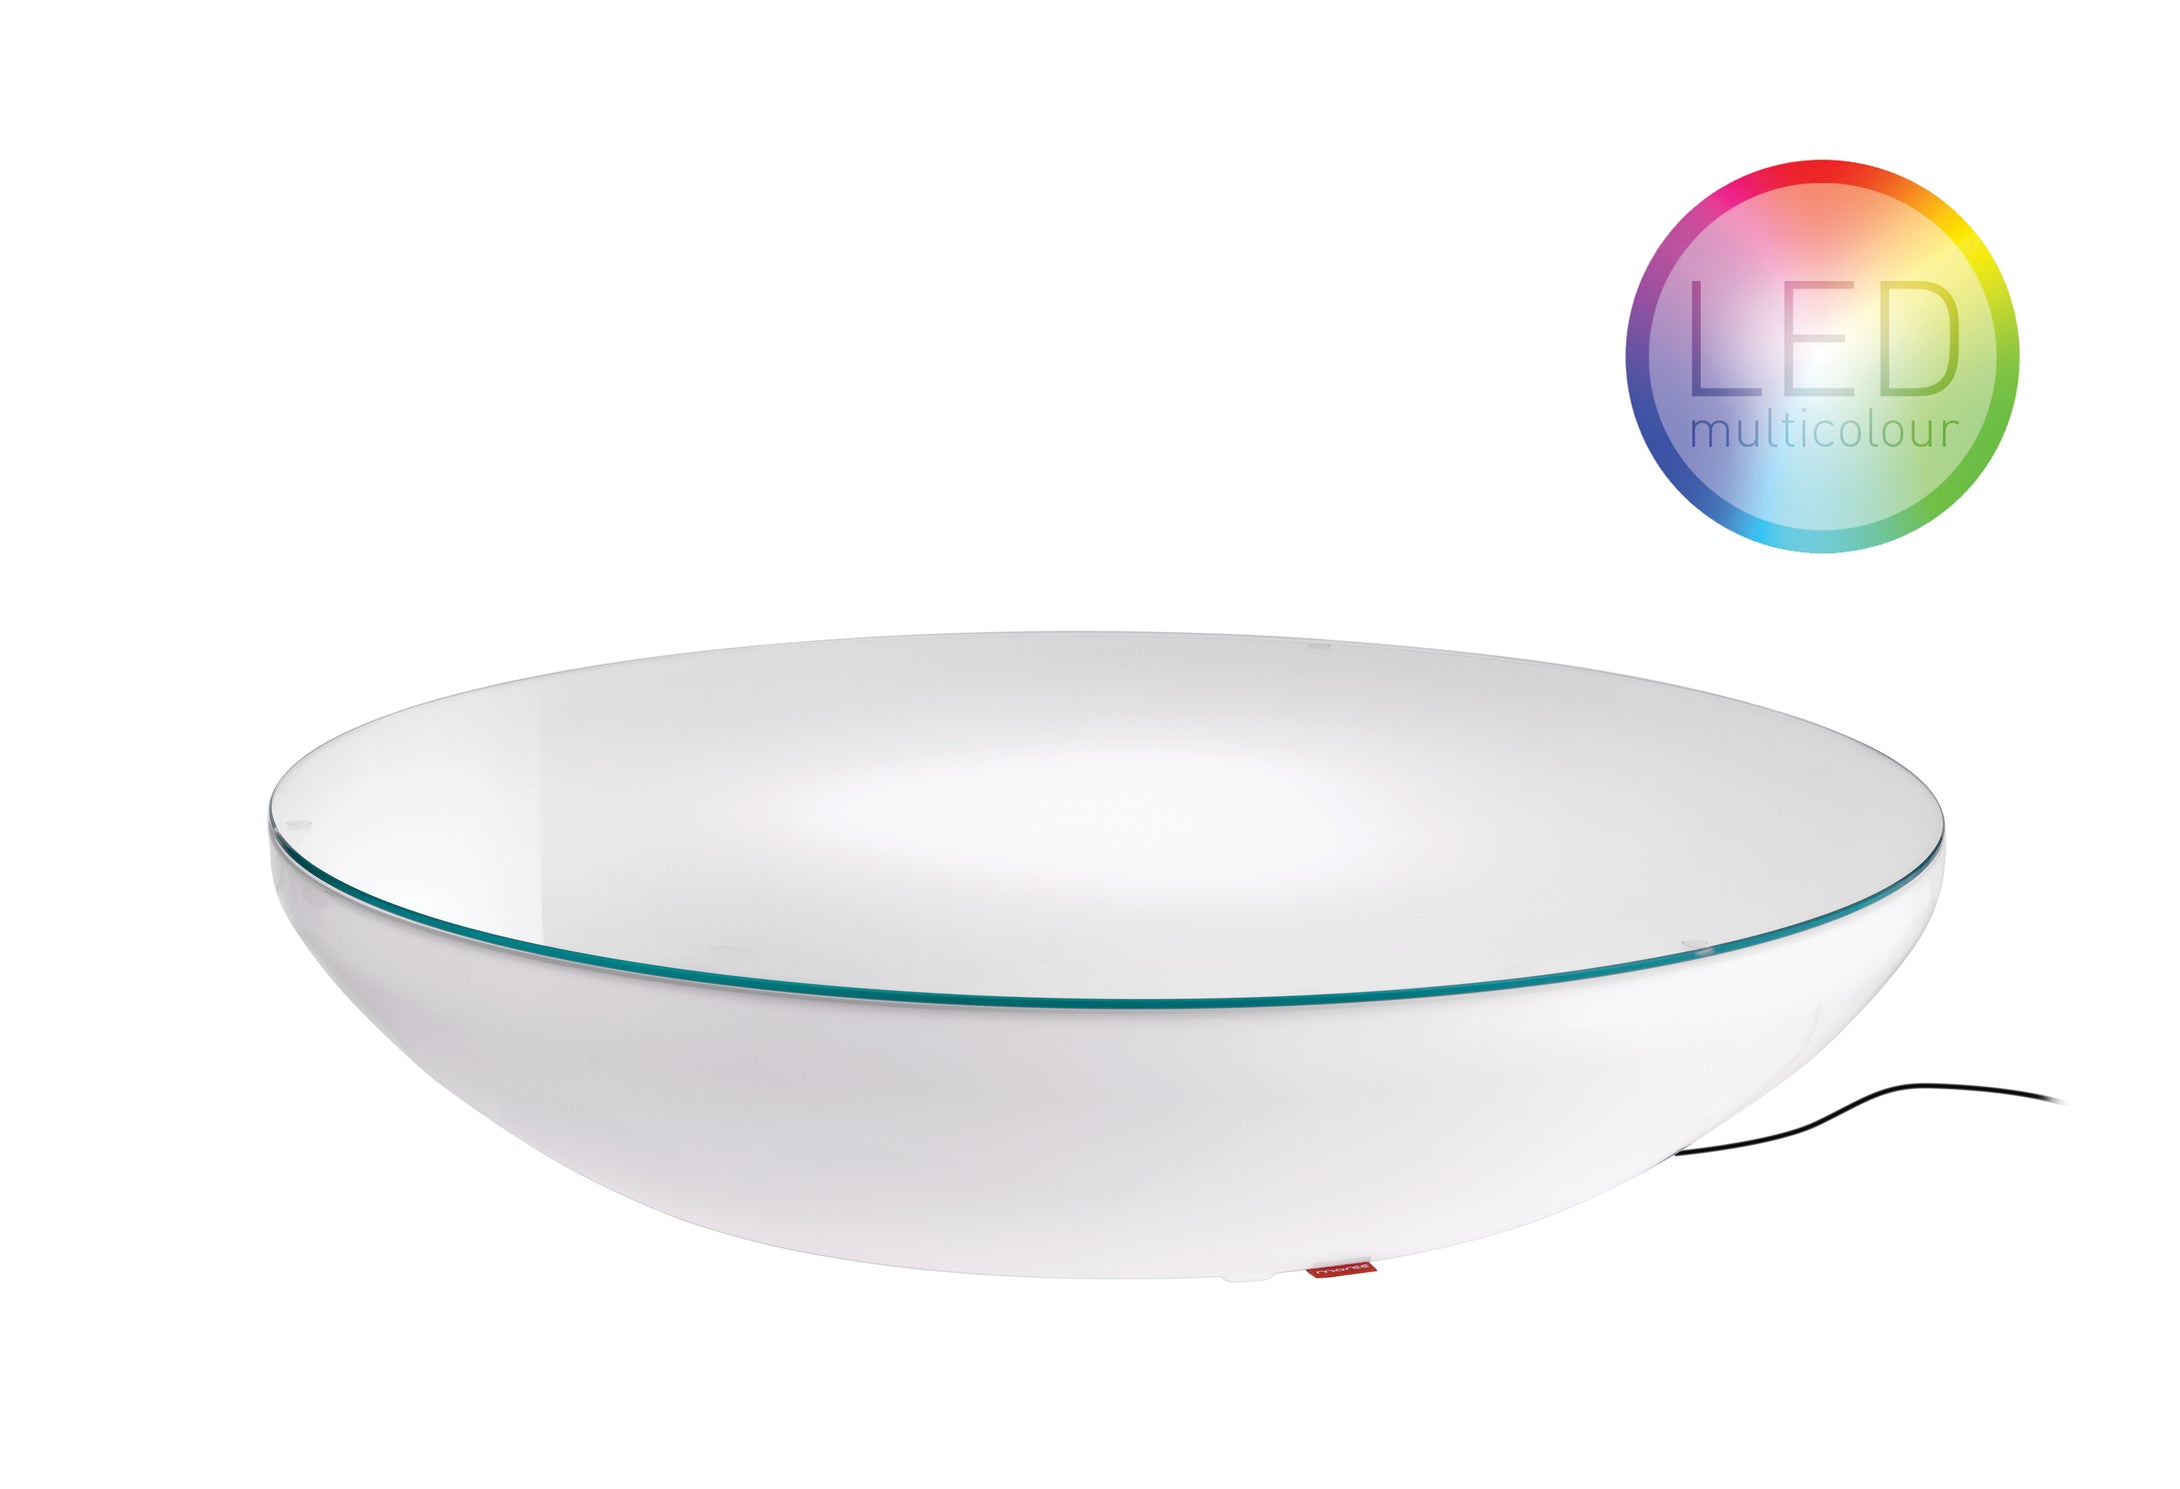 Lounge Variation LED Pro Outdoor von Moree; beleuchteter, runder Tisch, der im Design entfernt an eine flache Schale erinnert; weiß aus PMMA, glänzend beschichtet mit einer Deckplatte aus Sicherheitsglas; incl. LED-Einheit und Fernbedienung.